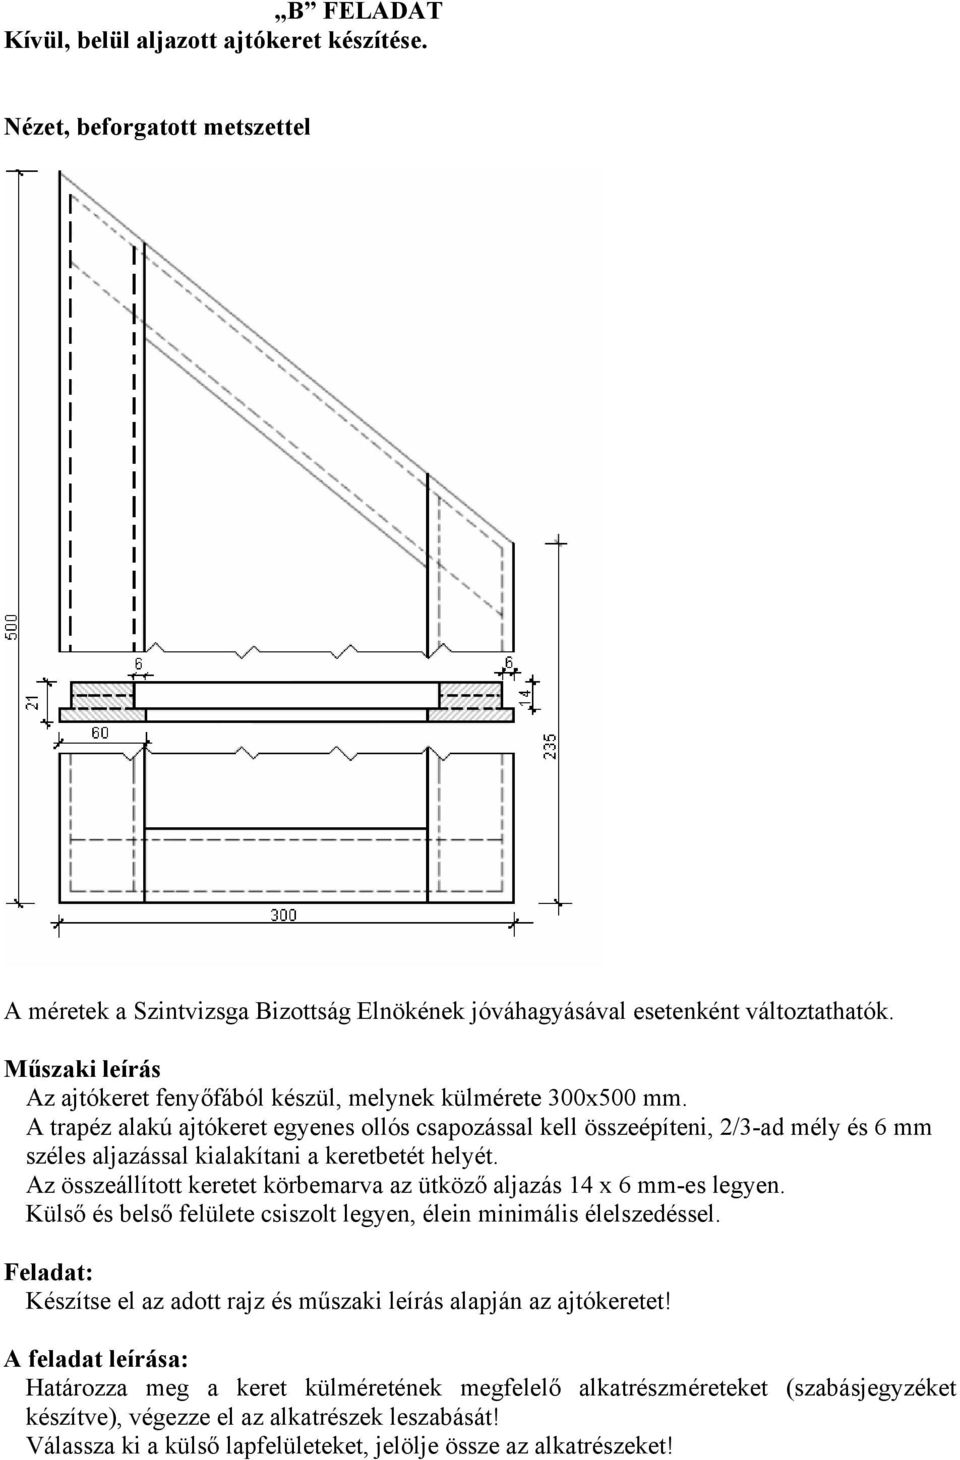 A trapéz alakú ajtókeret egyenes ollós csapozással kell összeépíteni, 2/3-ad mély és 6 mm széles aljazással kialakítani a keretbetét helyét.